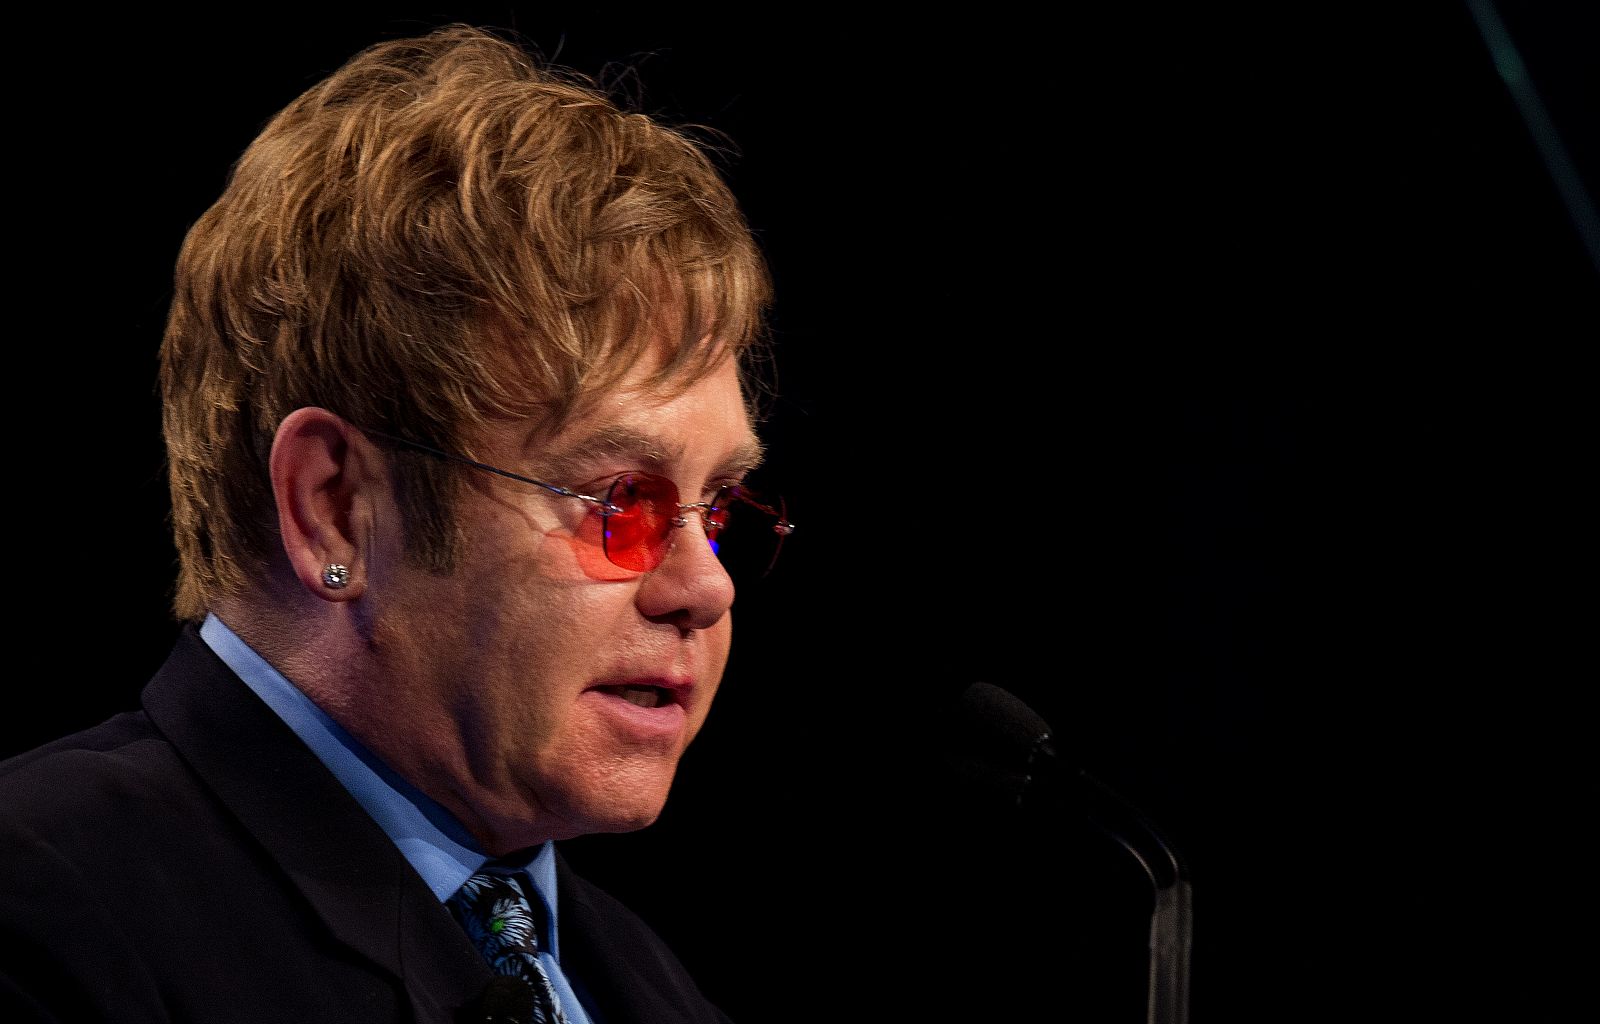 El cantante Elton John